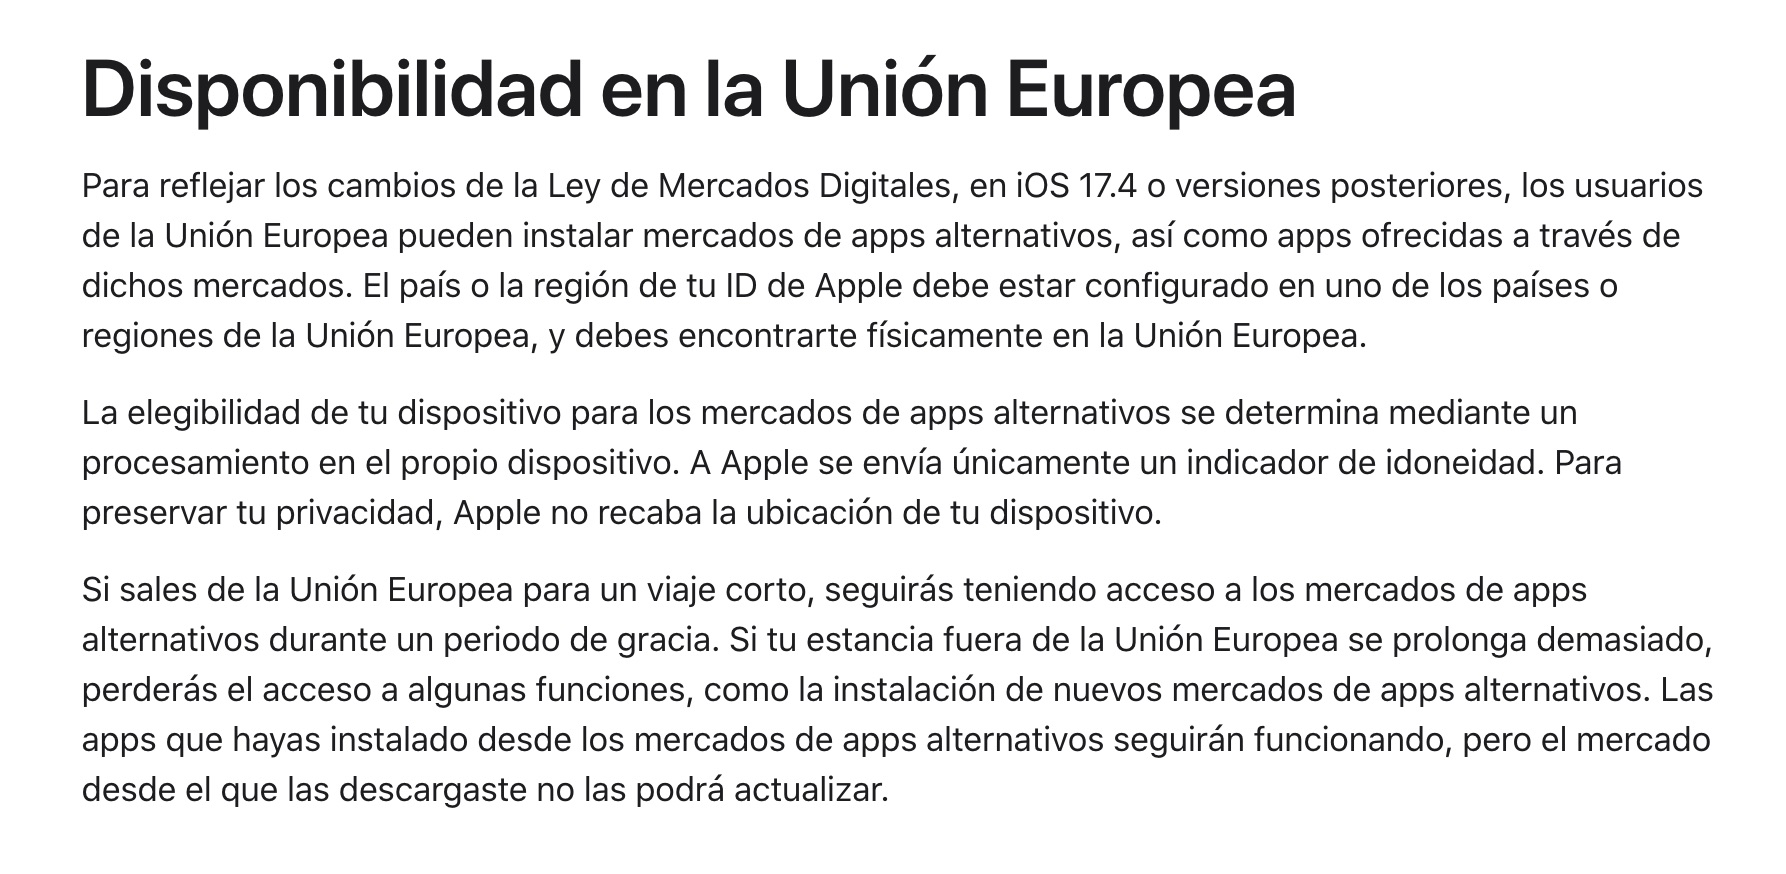 El mismo párrafo en la web española de Apple, sin actualizar con esa mención de los 30 días, un indicio más de que van decidiendo muchos de estos detalles sobre la marcha.